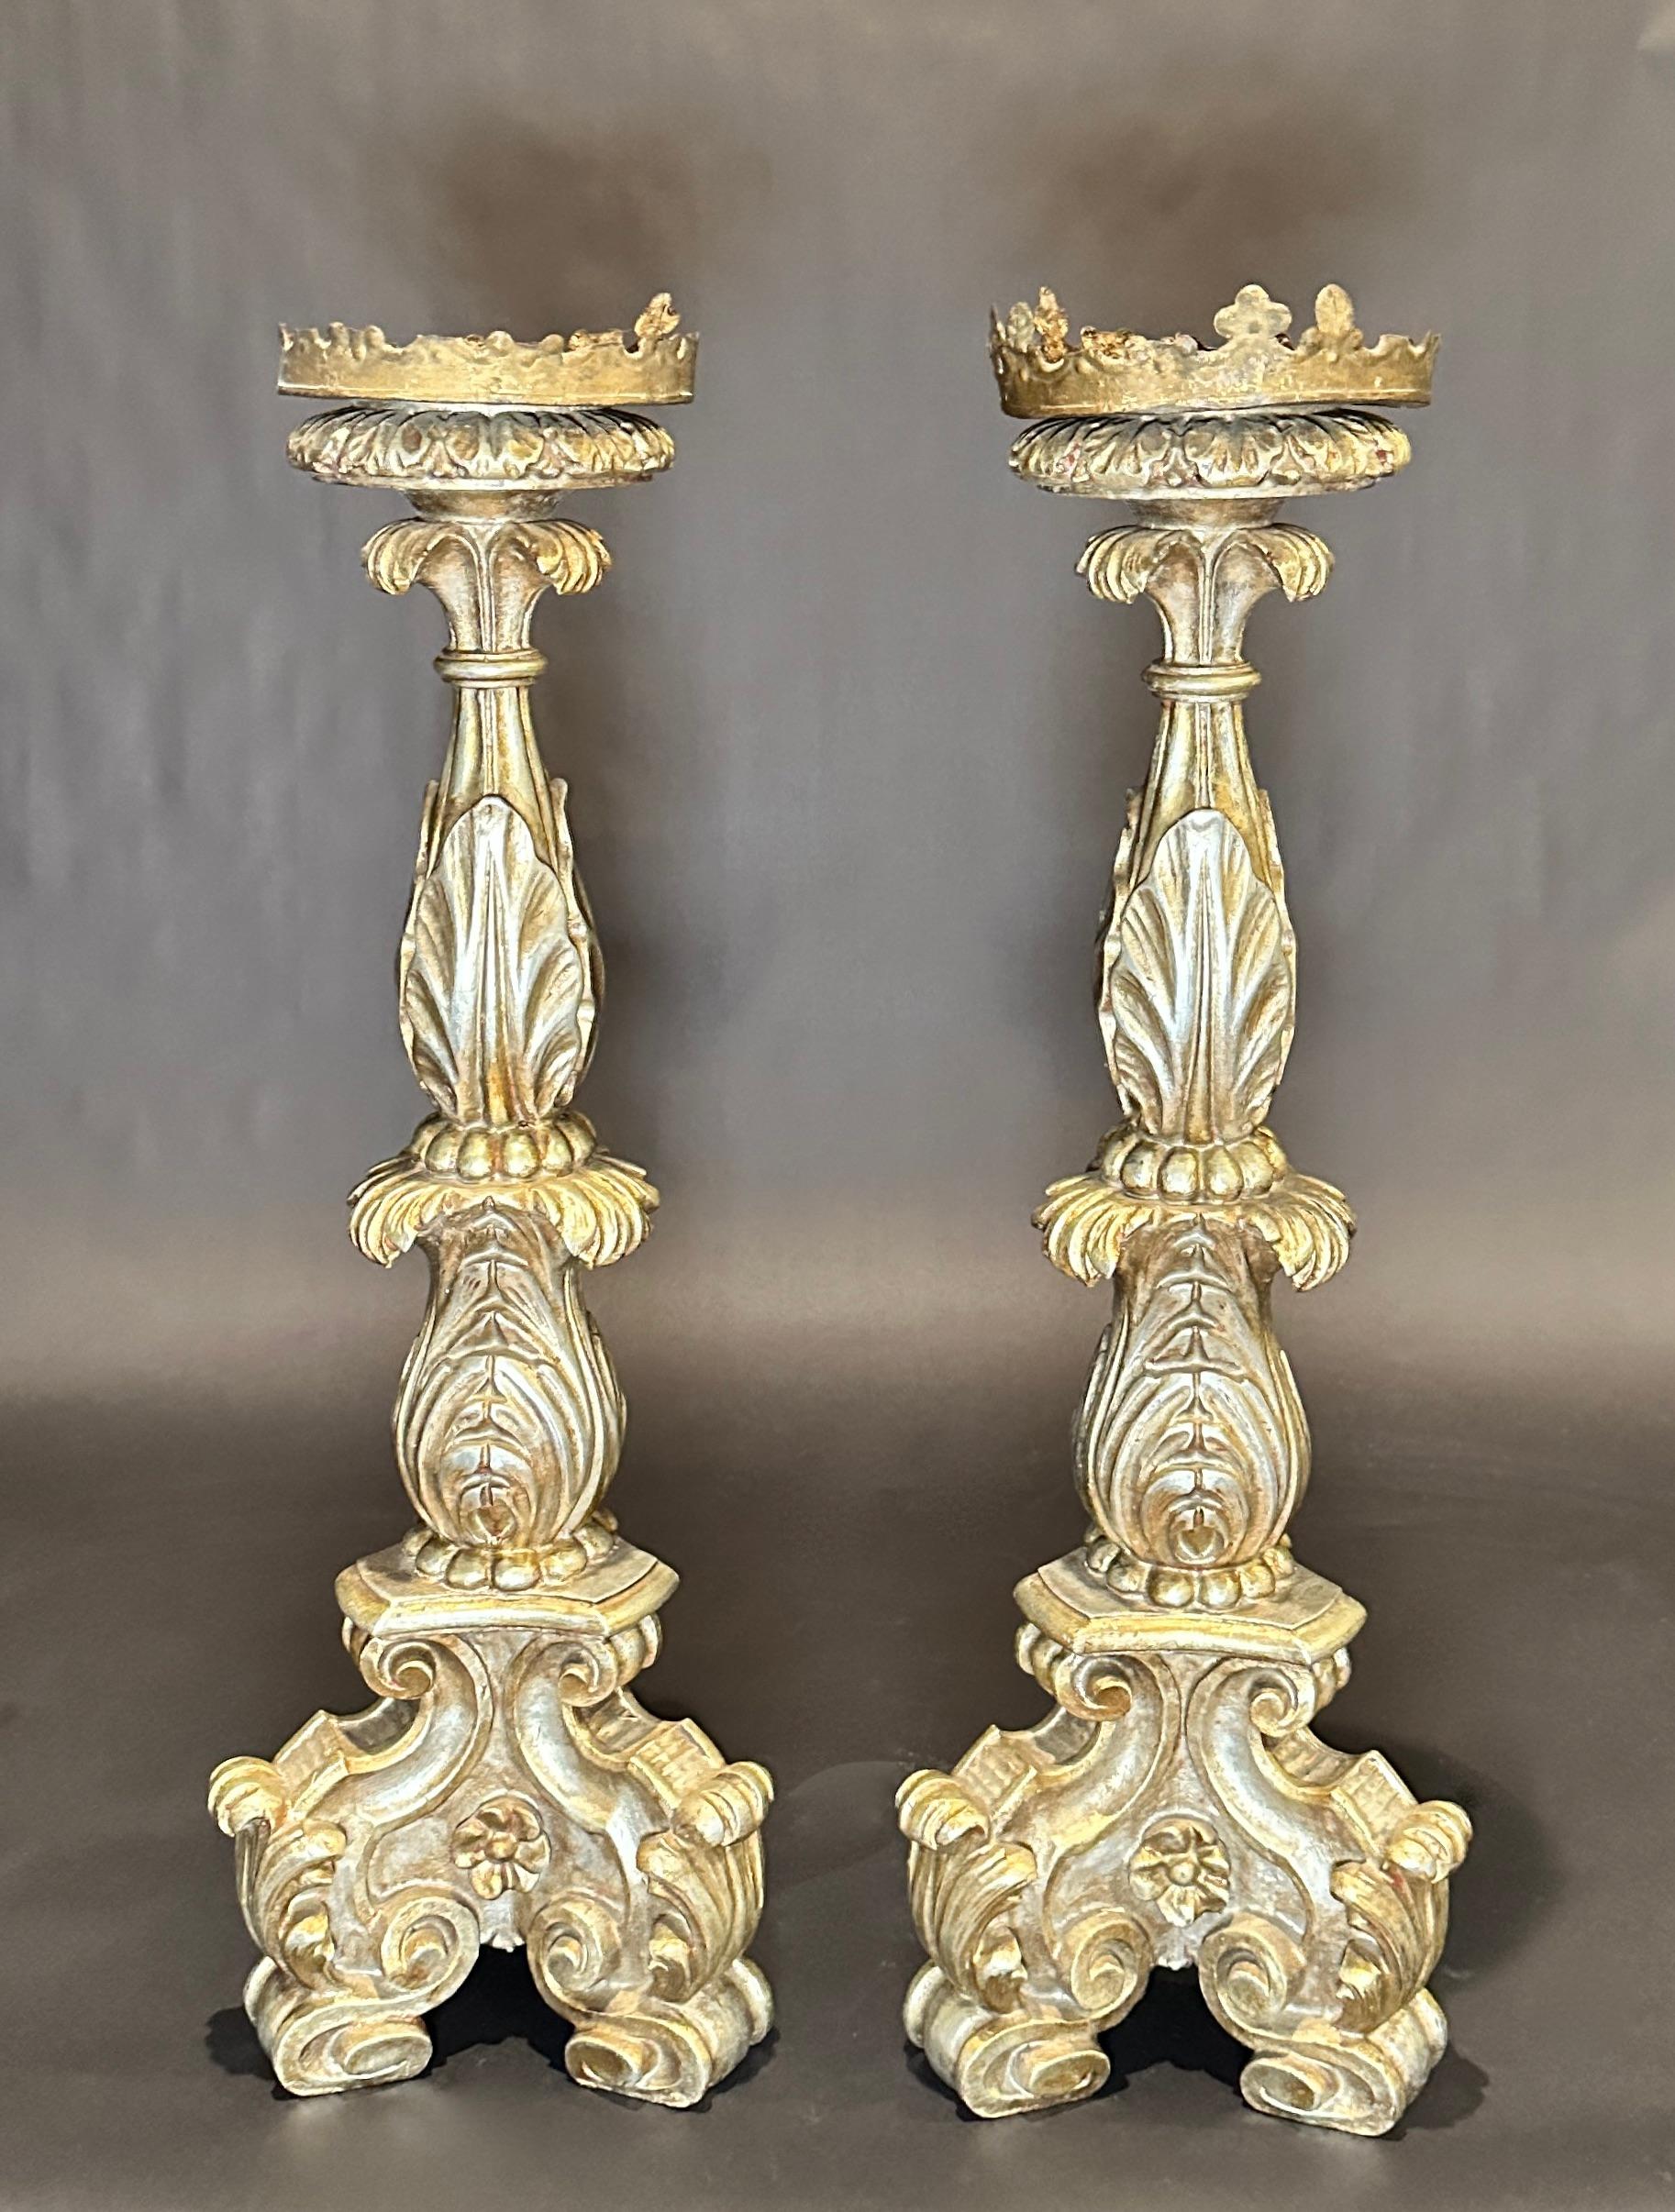 Ein atemberaubendes Paar von handgeschnitzten Silber vergoldetes Holz antiken Barock 19. Jahrhundert Italienisch Tripod Form Basis Pricket Kerzenständer. Diese prächtigen Kerzenständer sind schön groß, silbervergoldet und kunstvoll geschnitzt.